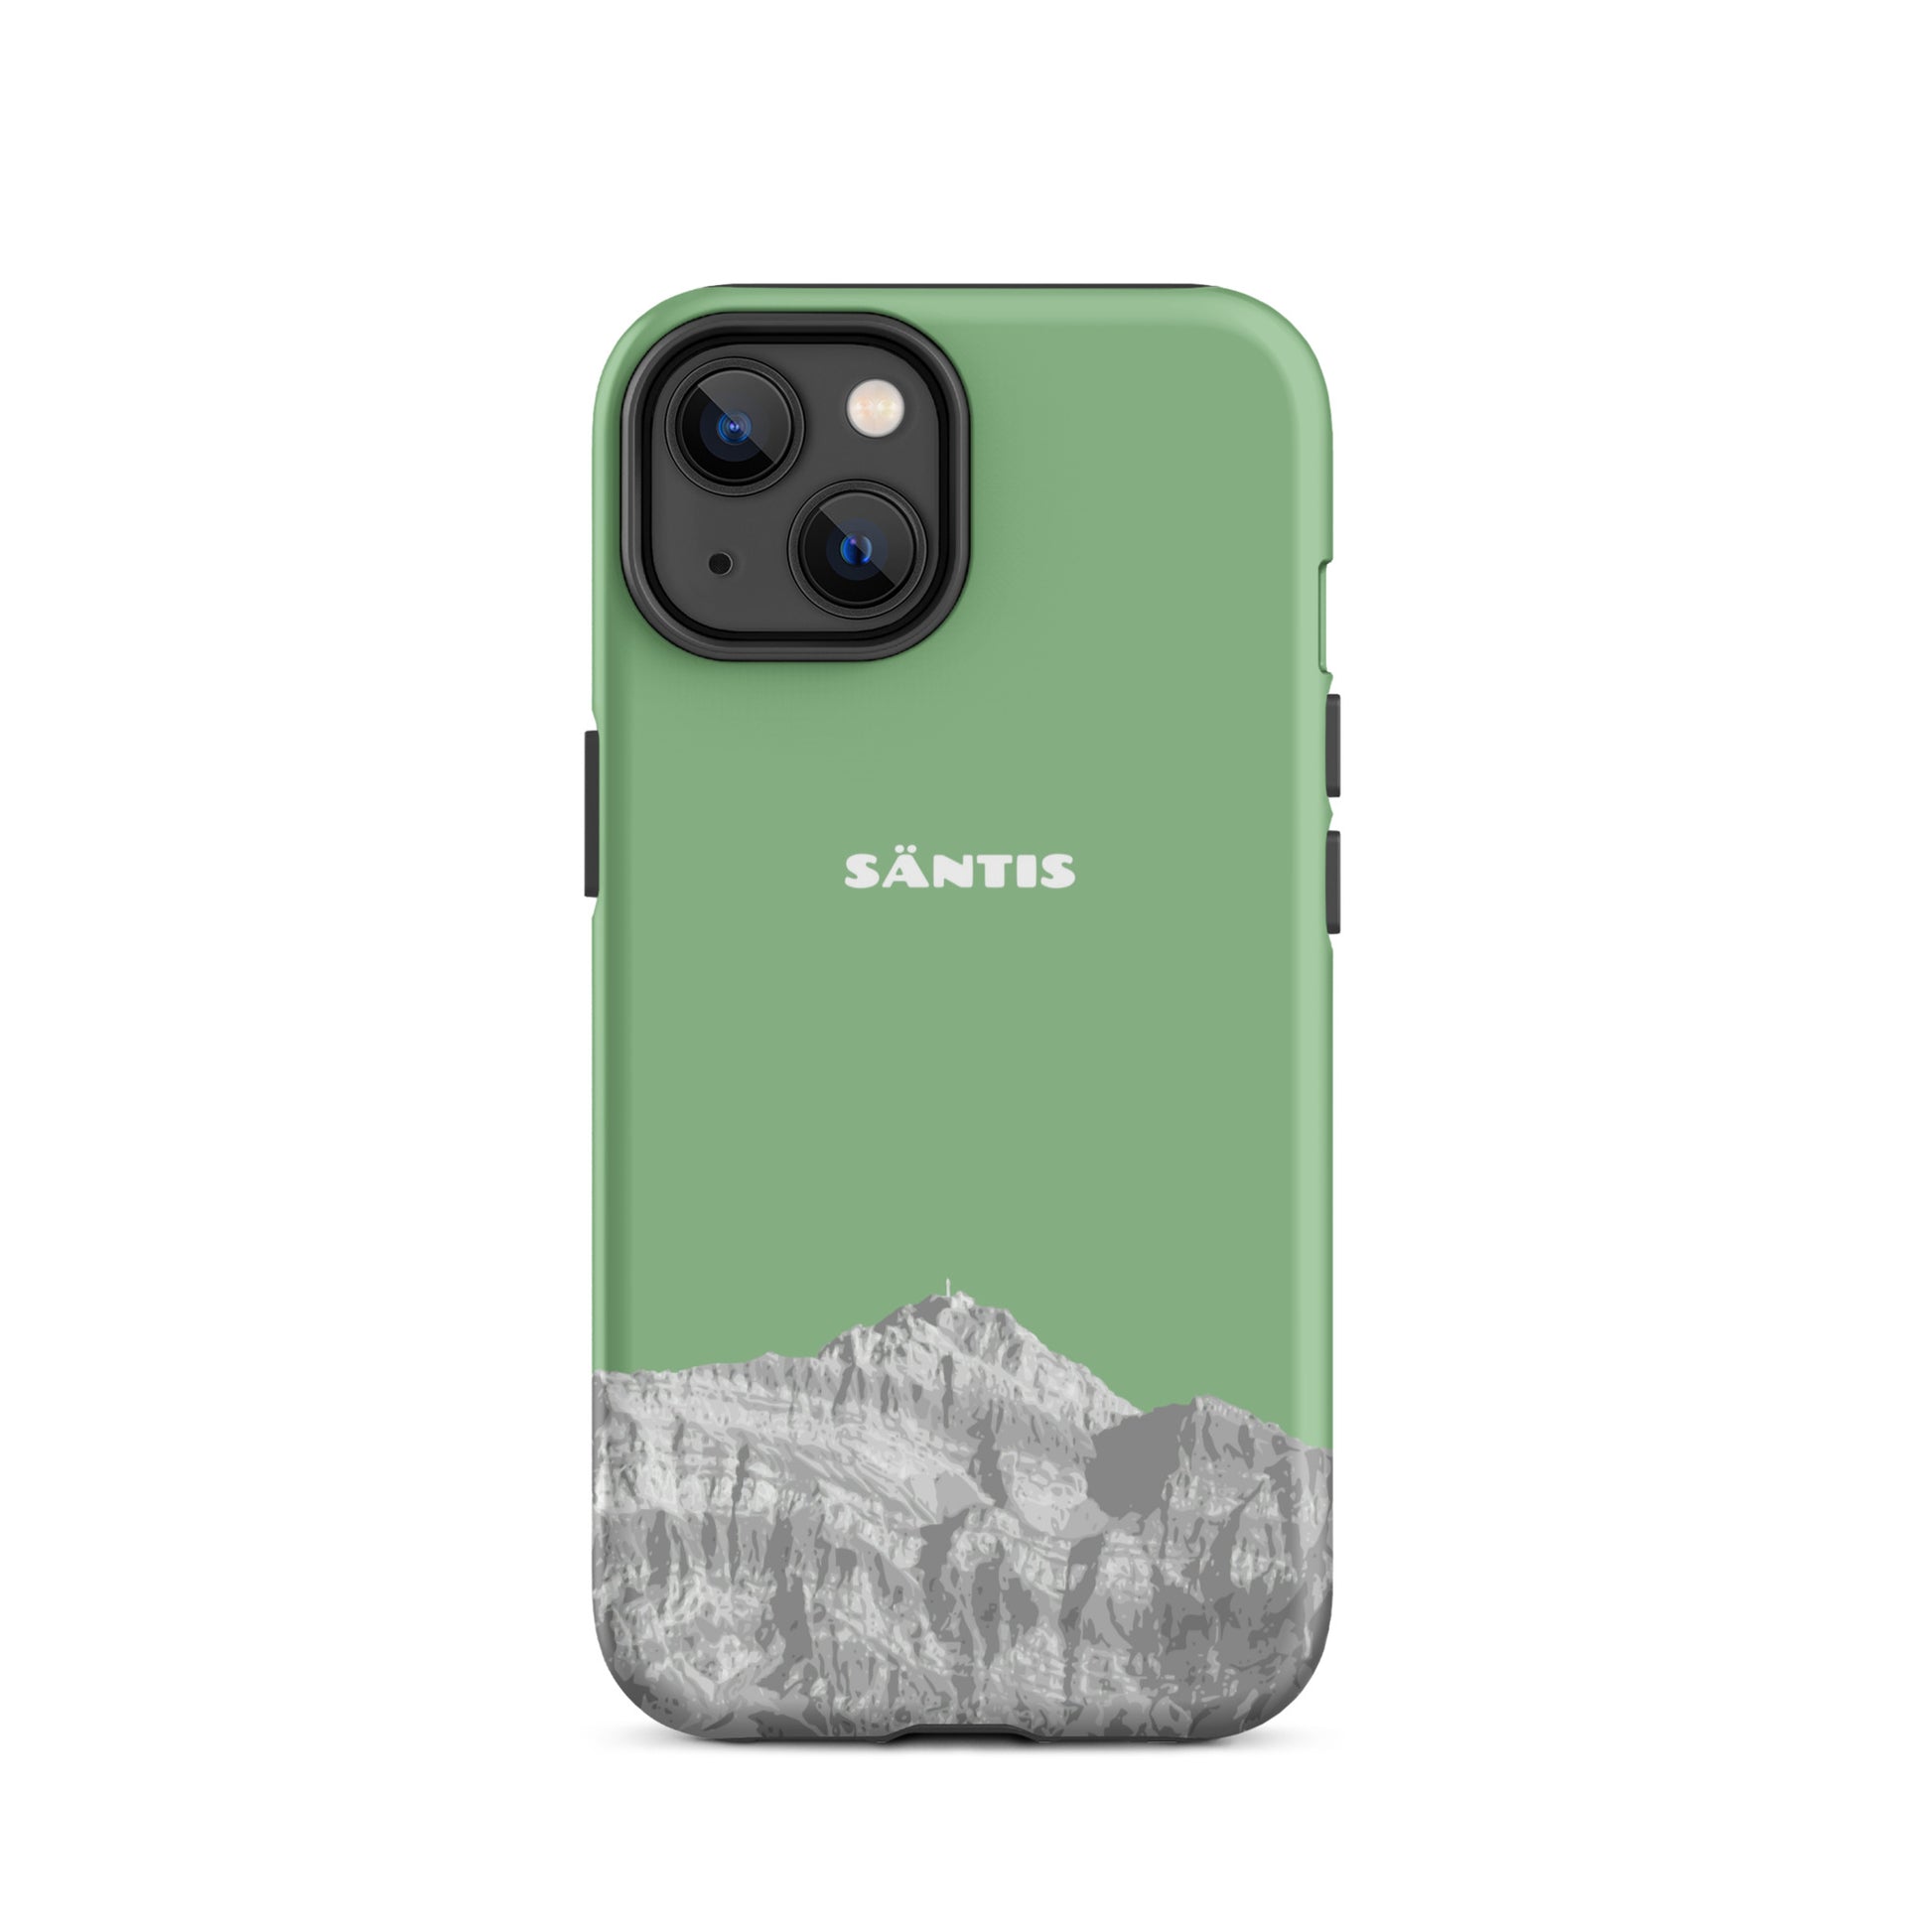 Hülle für das iPhone 14 von Apple in der Farbe Hellgrün, dass den Säntis im Alpstein zeigt.